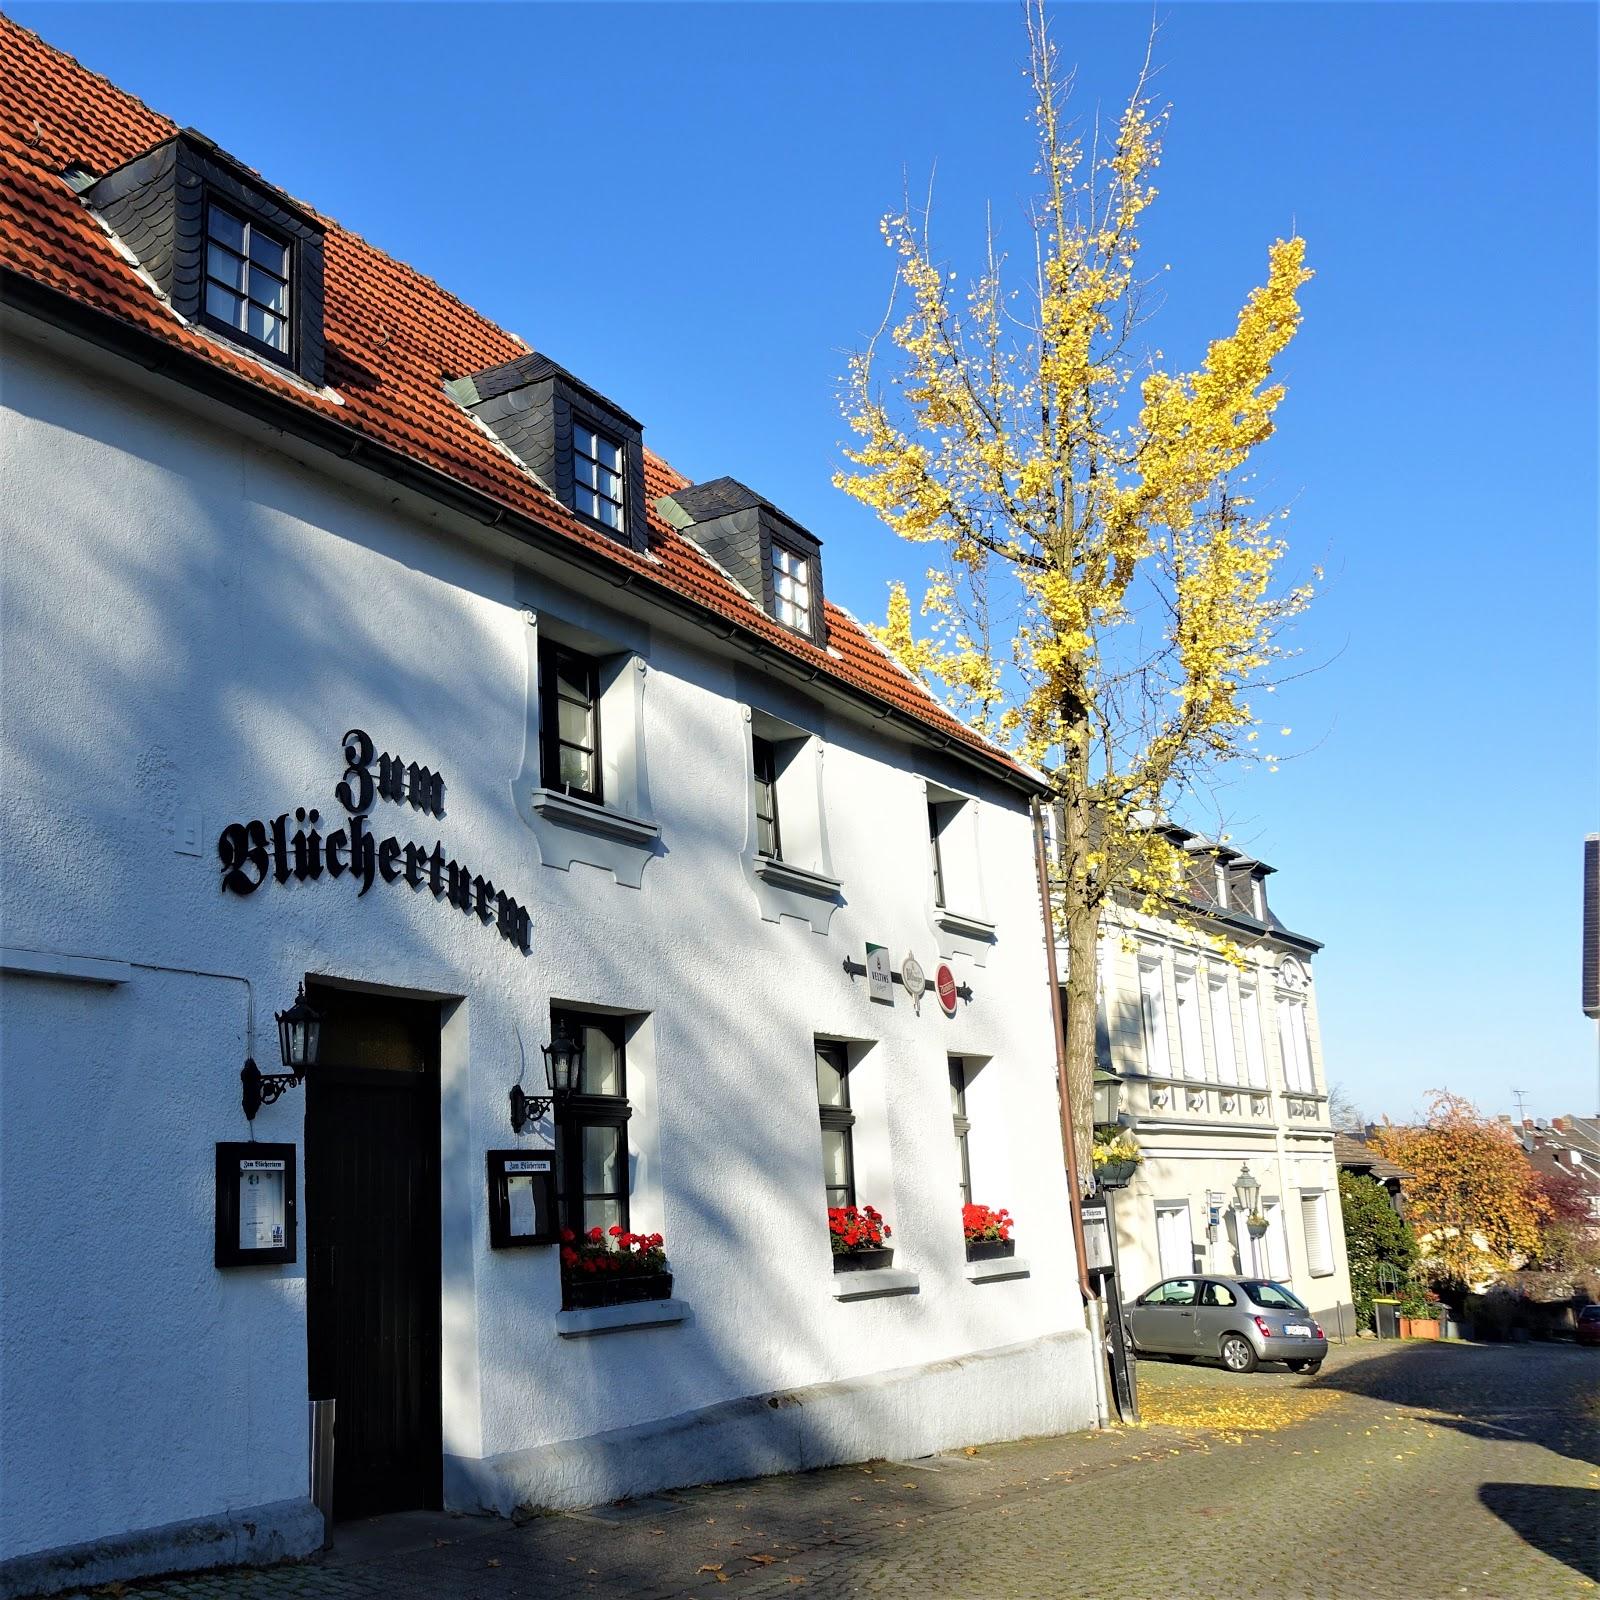 Restaurant "Zum Blücherturm" in Essen